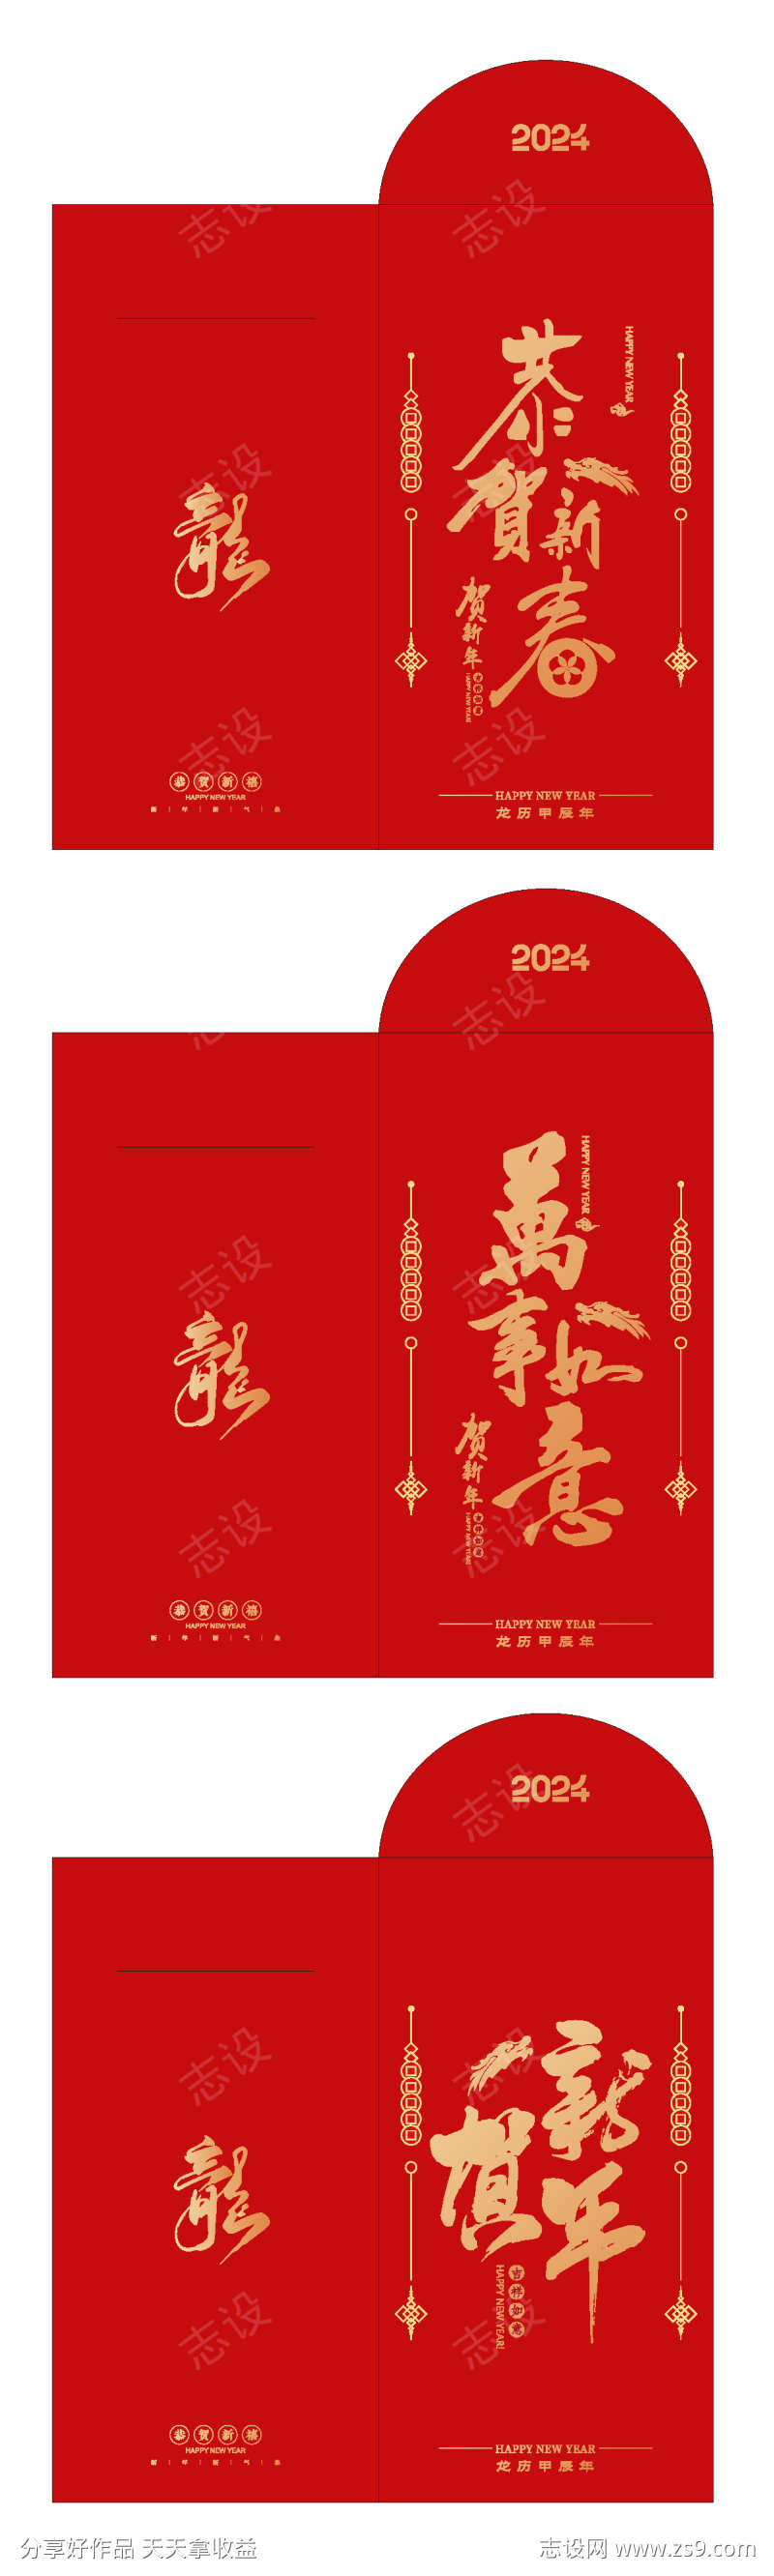 2024年龙年红包设计